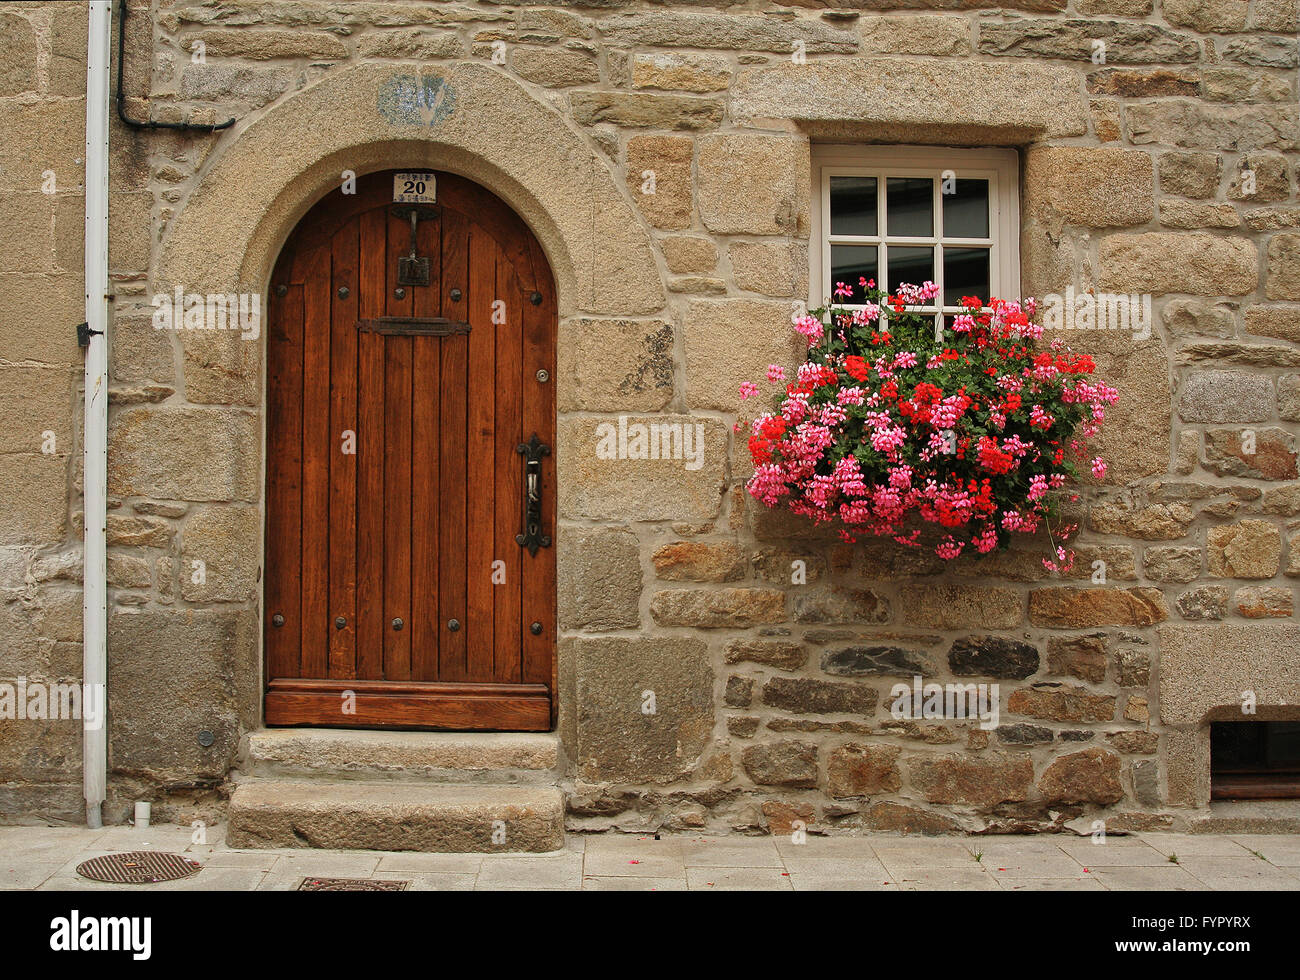 Porte et fenêtre avec des fleurs roses à Roscoff (France) Banque D'Images